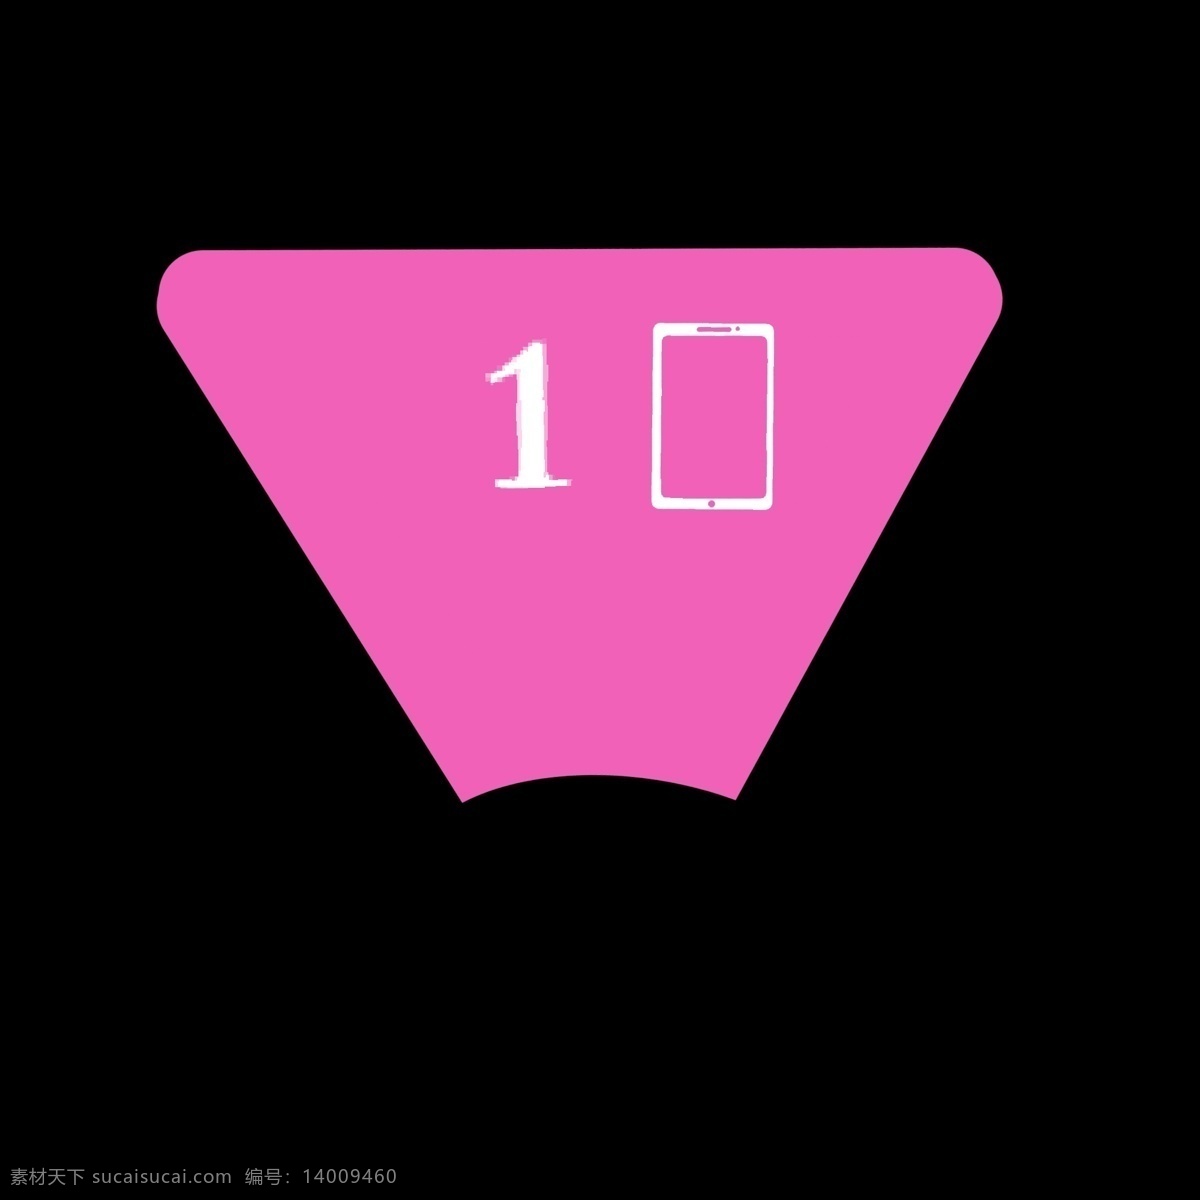 粉色 三角形 数字 分类 图标 手机 分类表 分解 分化 分开 ppt专用 卡通 简约 简洁 简单 五颜六色